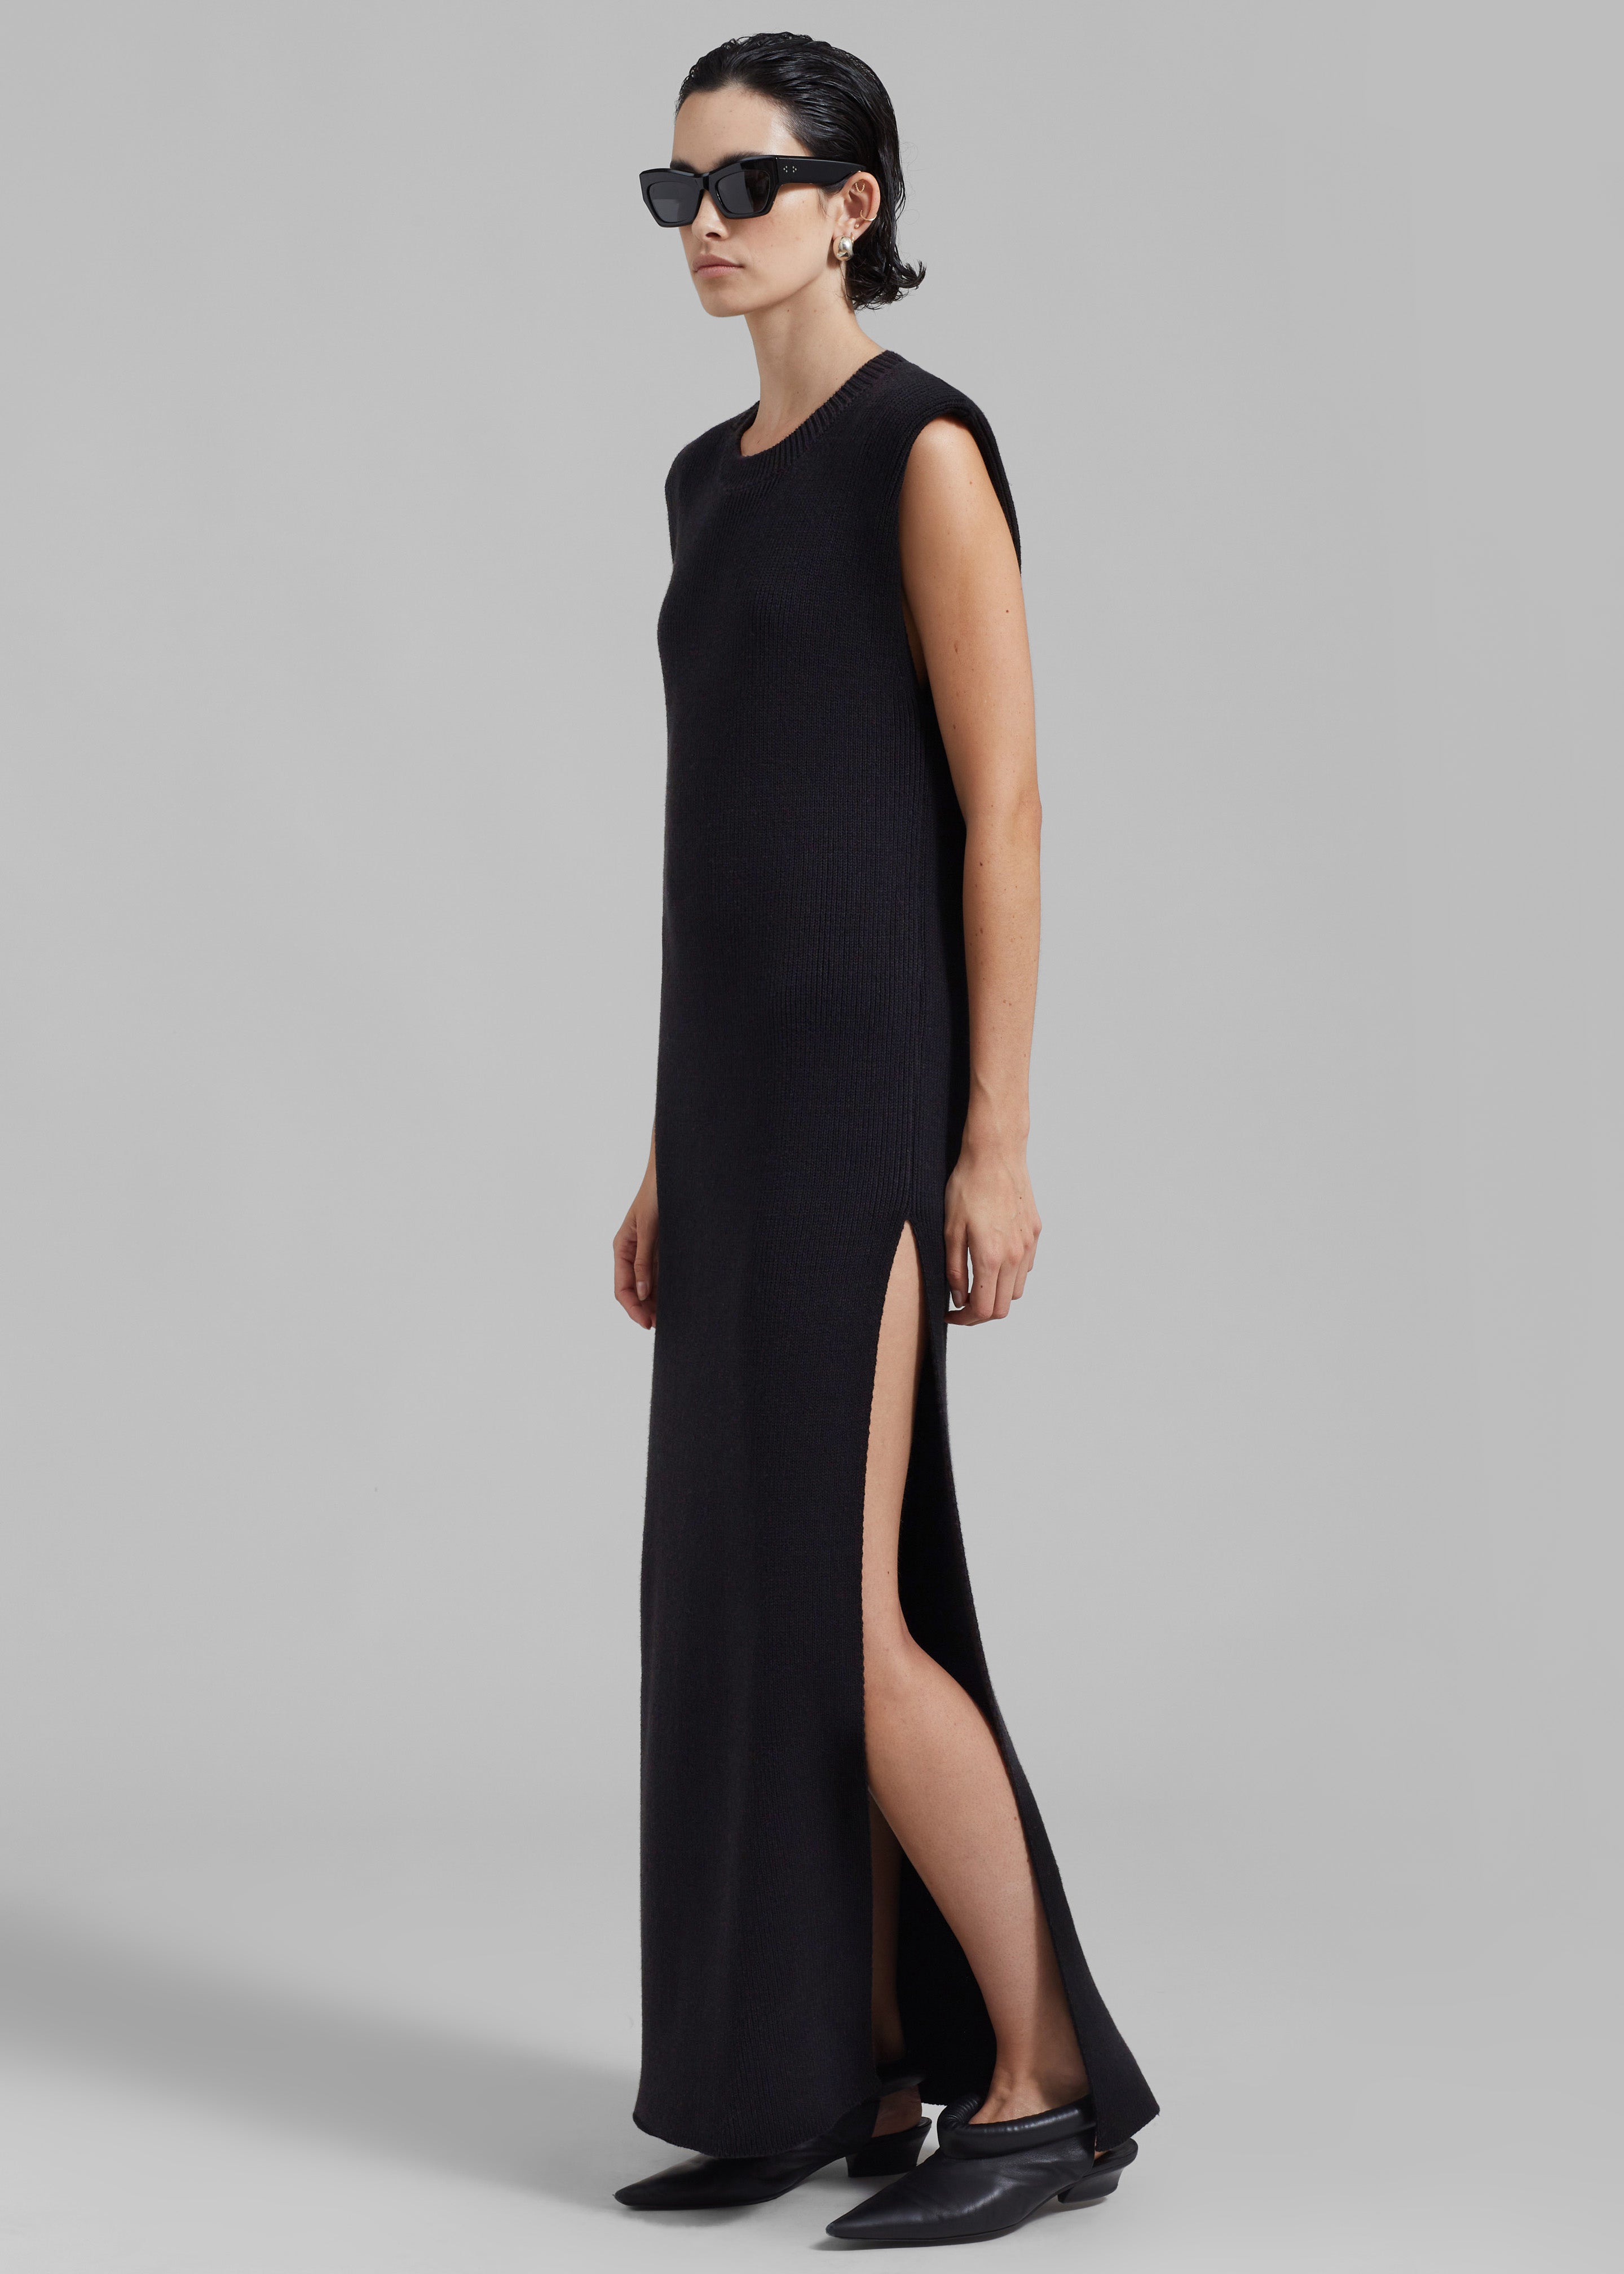 Wren Sleeveless Knit Dress - Black - 5